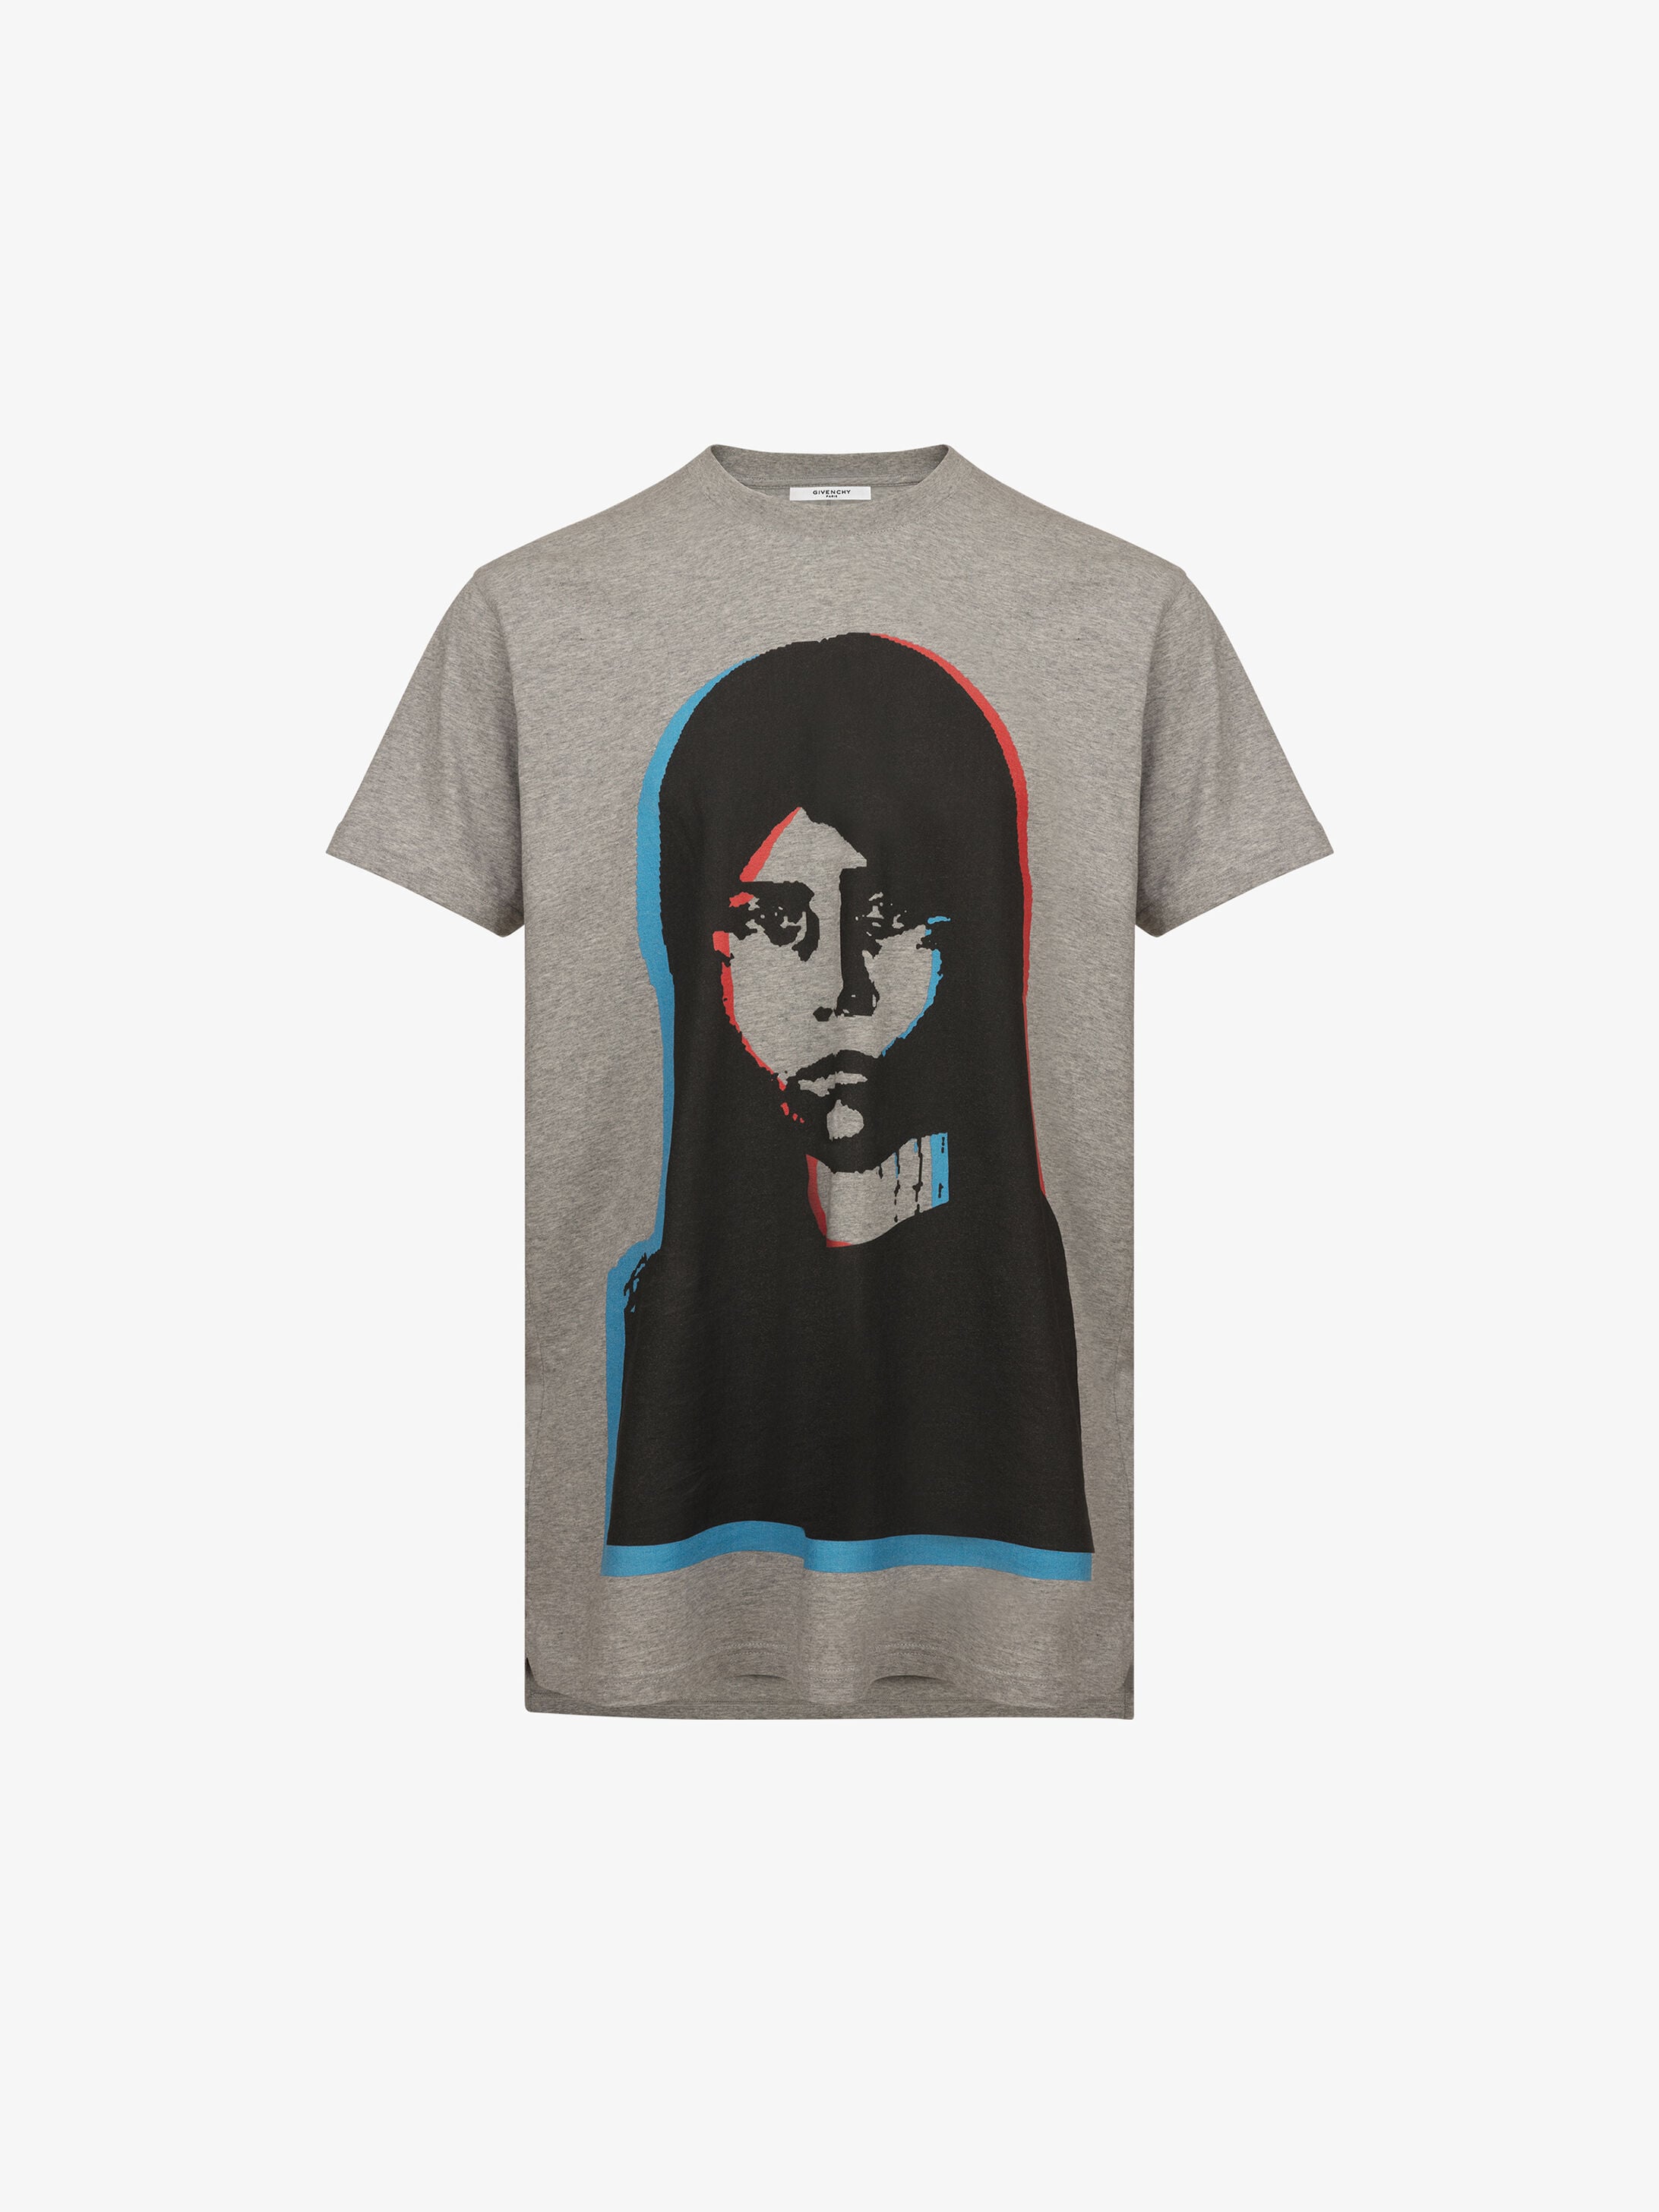 Givenchy Abstract girl printed T-shirt | GIVENCHY Paris